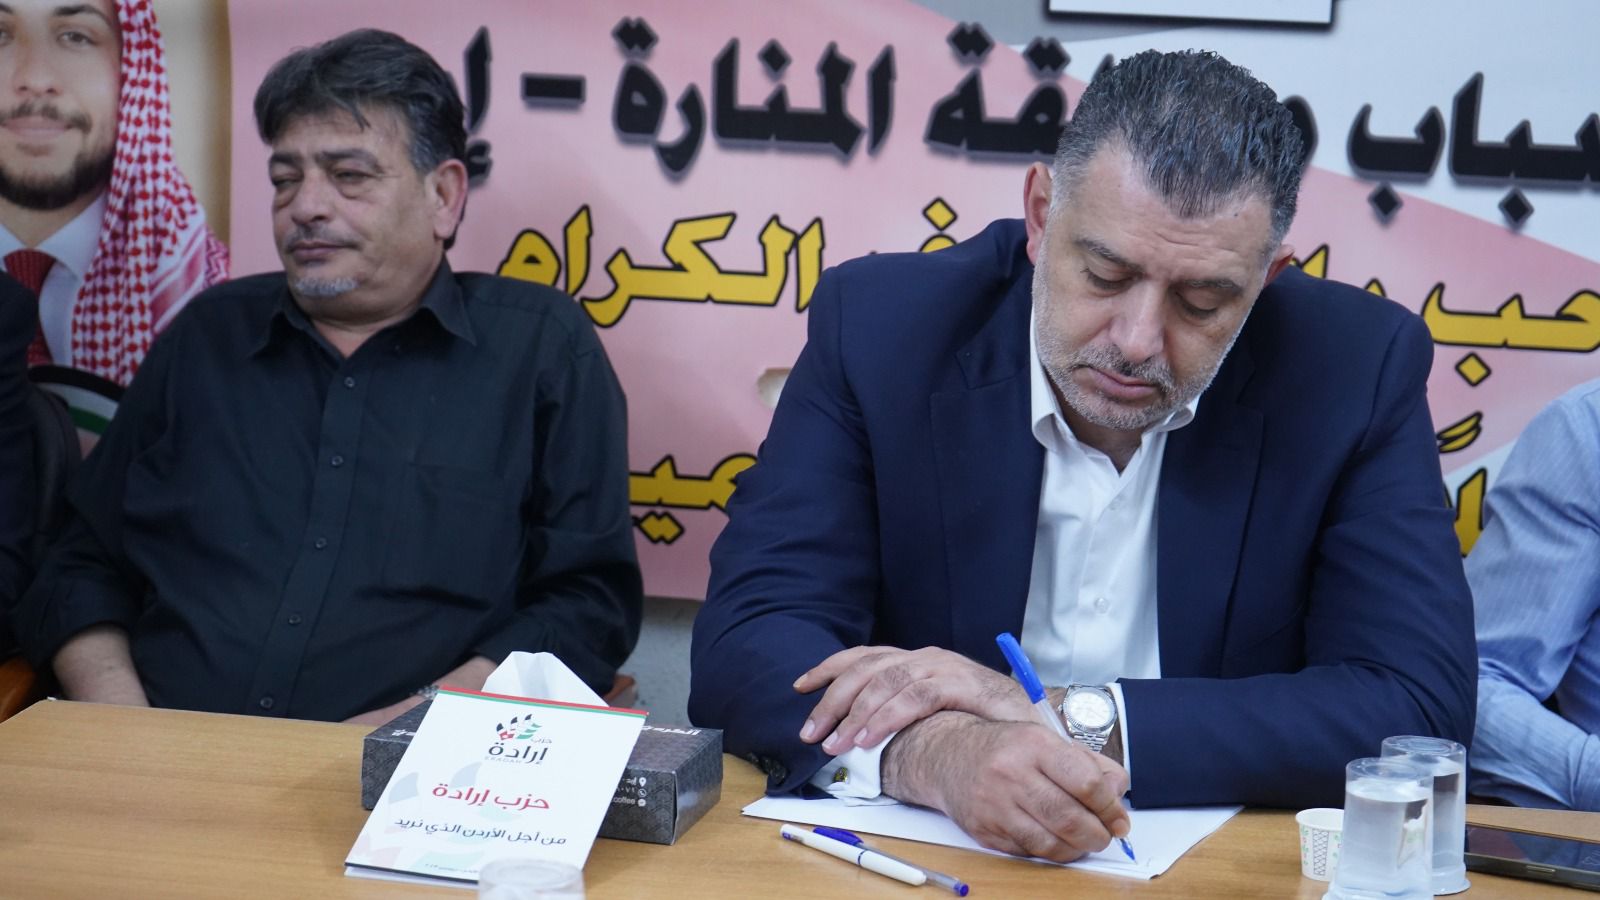 حزب إرادة يحاور الشباب في هيئة شباب المنارة في اربد  ..  (فيديو وصور) 